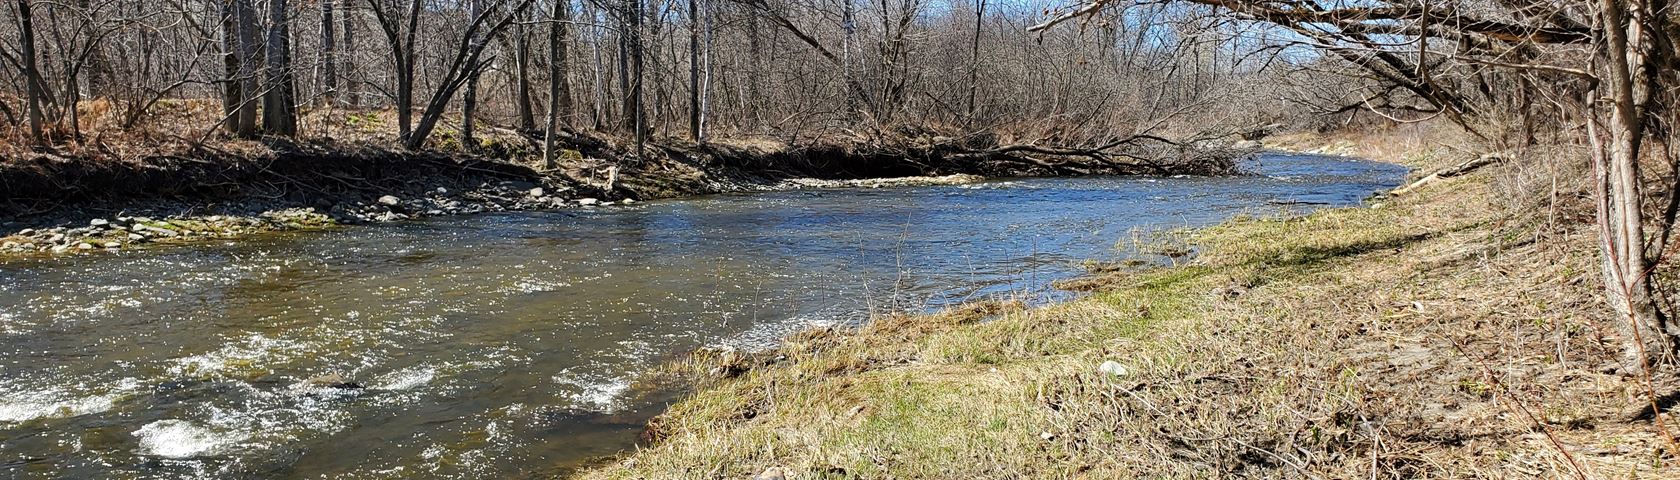 River in spring